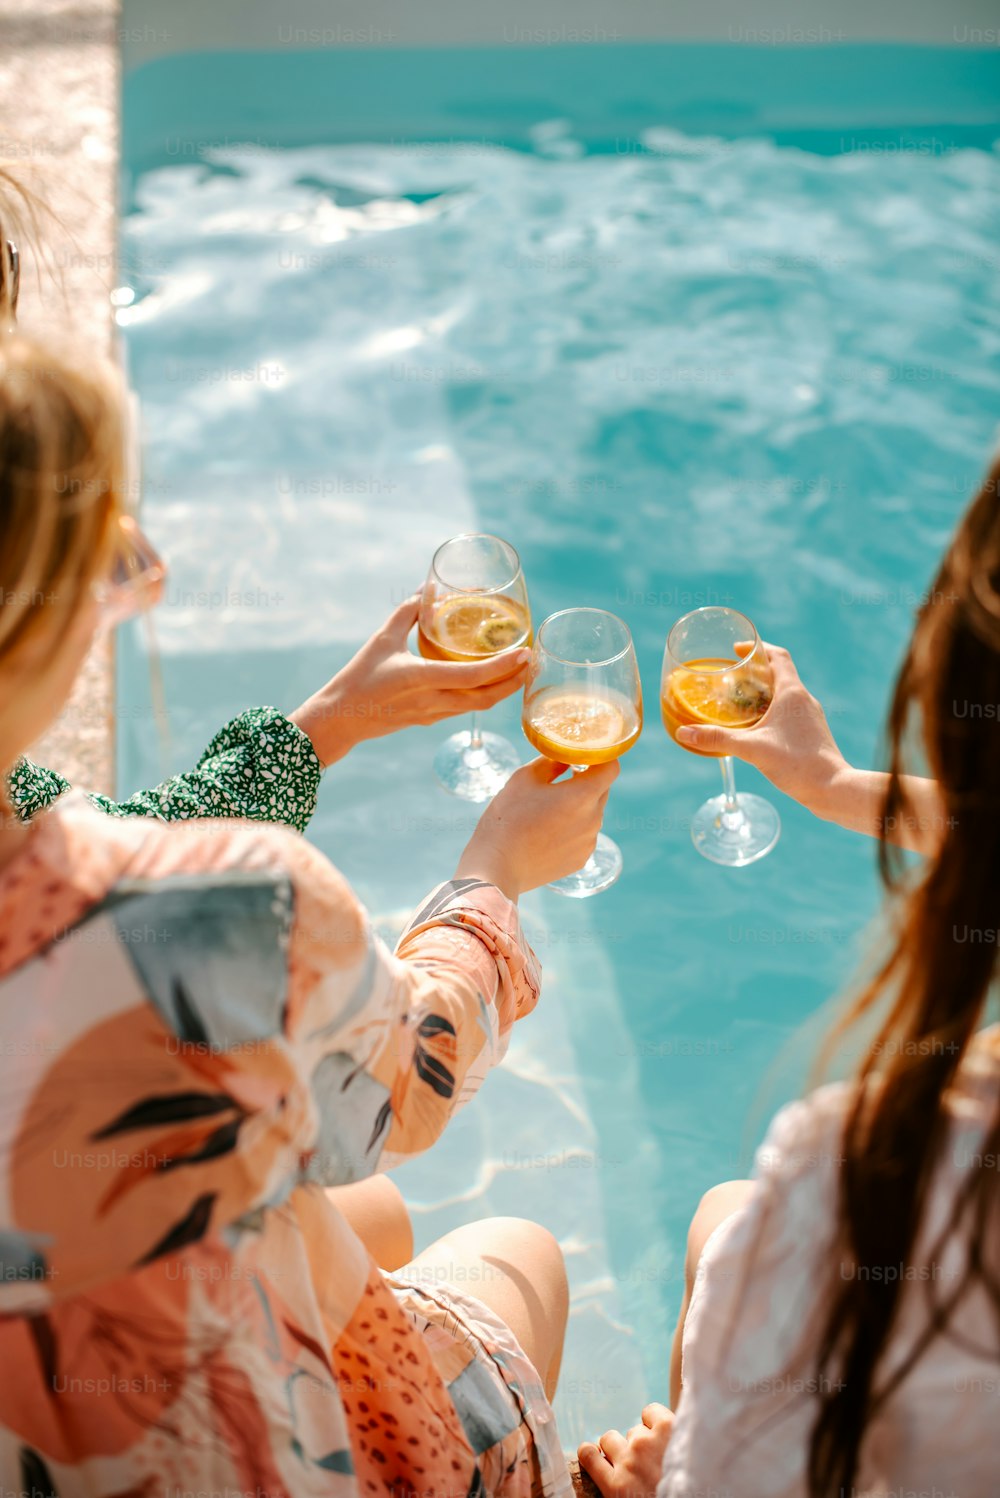 Un grupo de mujeres sentadas junto a una piscina sosteniendo copas de vino